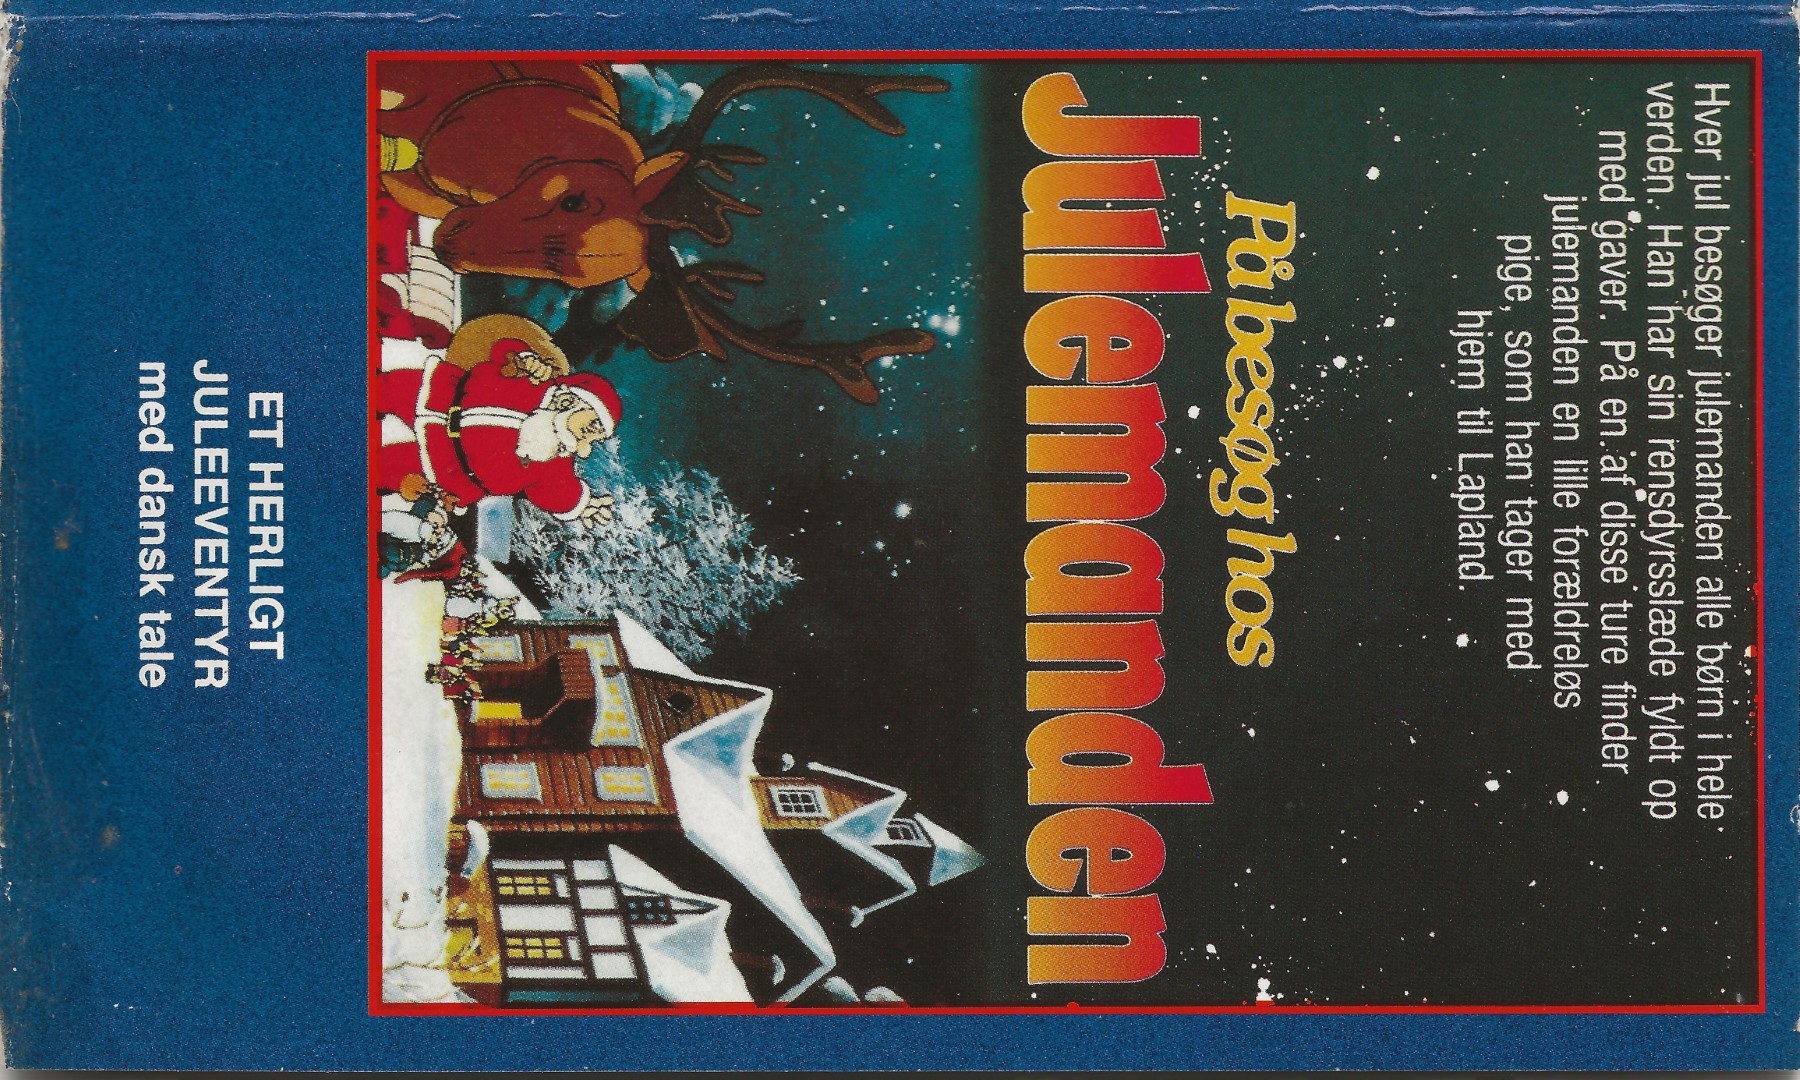 På besøg hos julemanden  VHS Kavan 1996